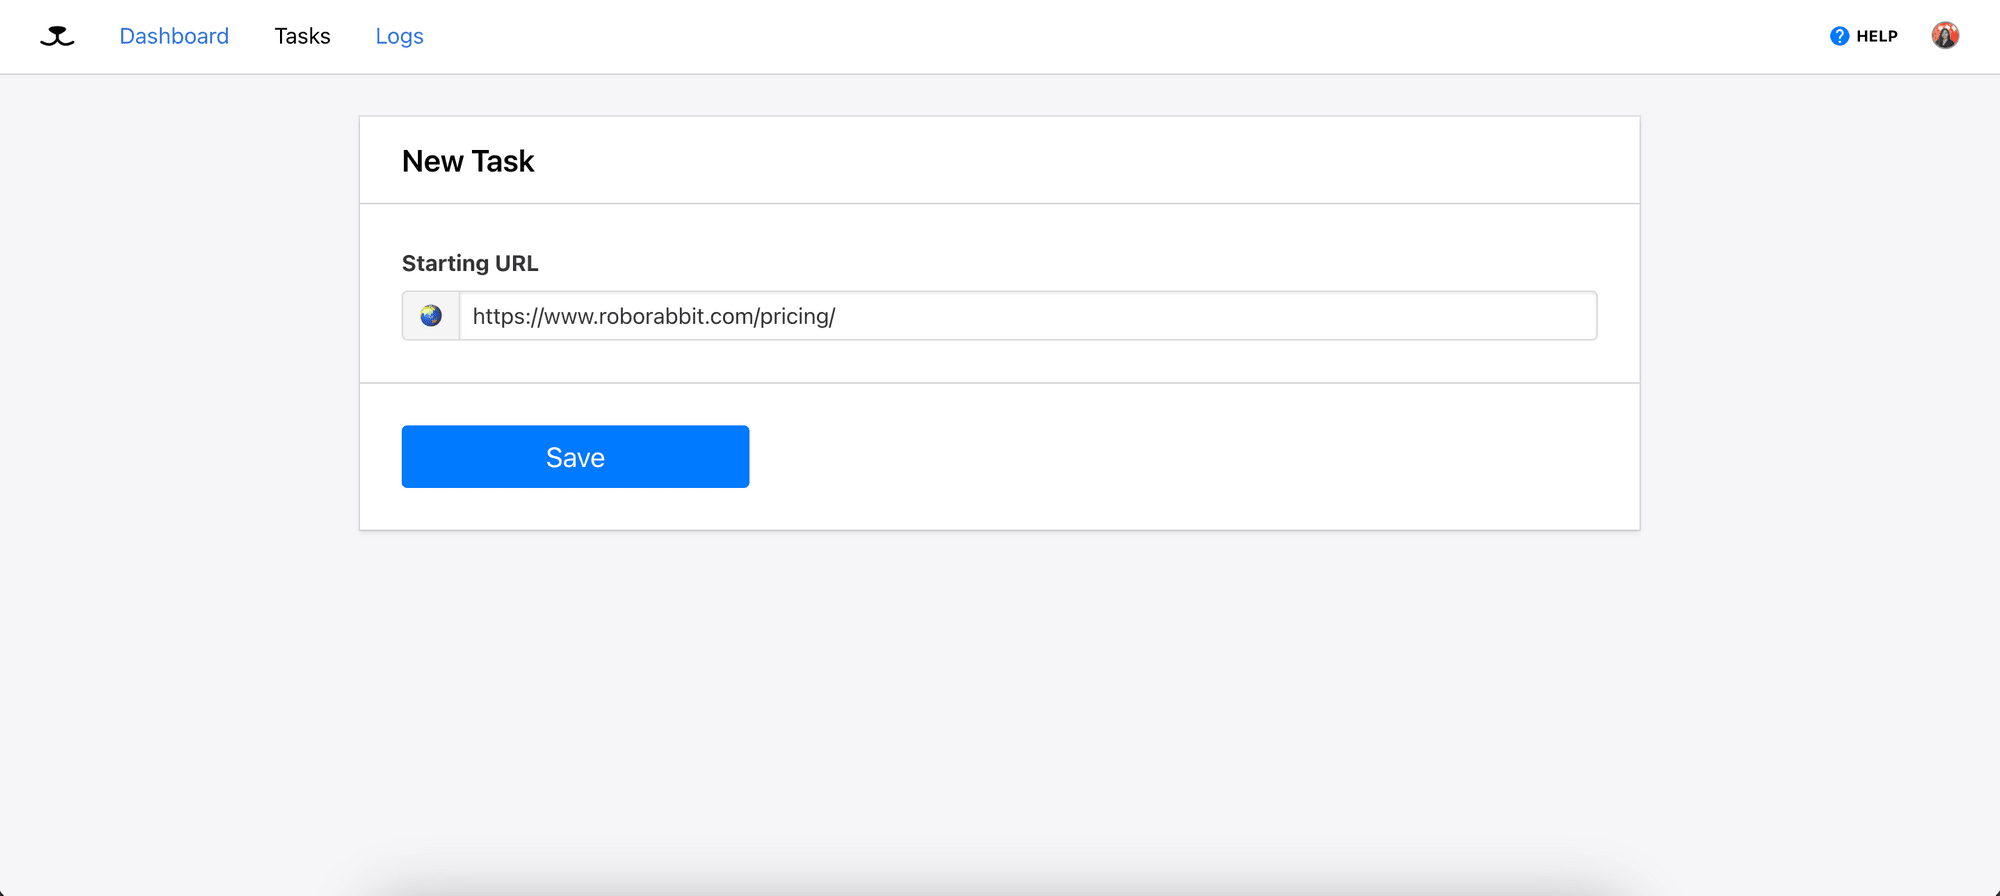 create new task - enter URL